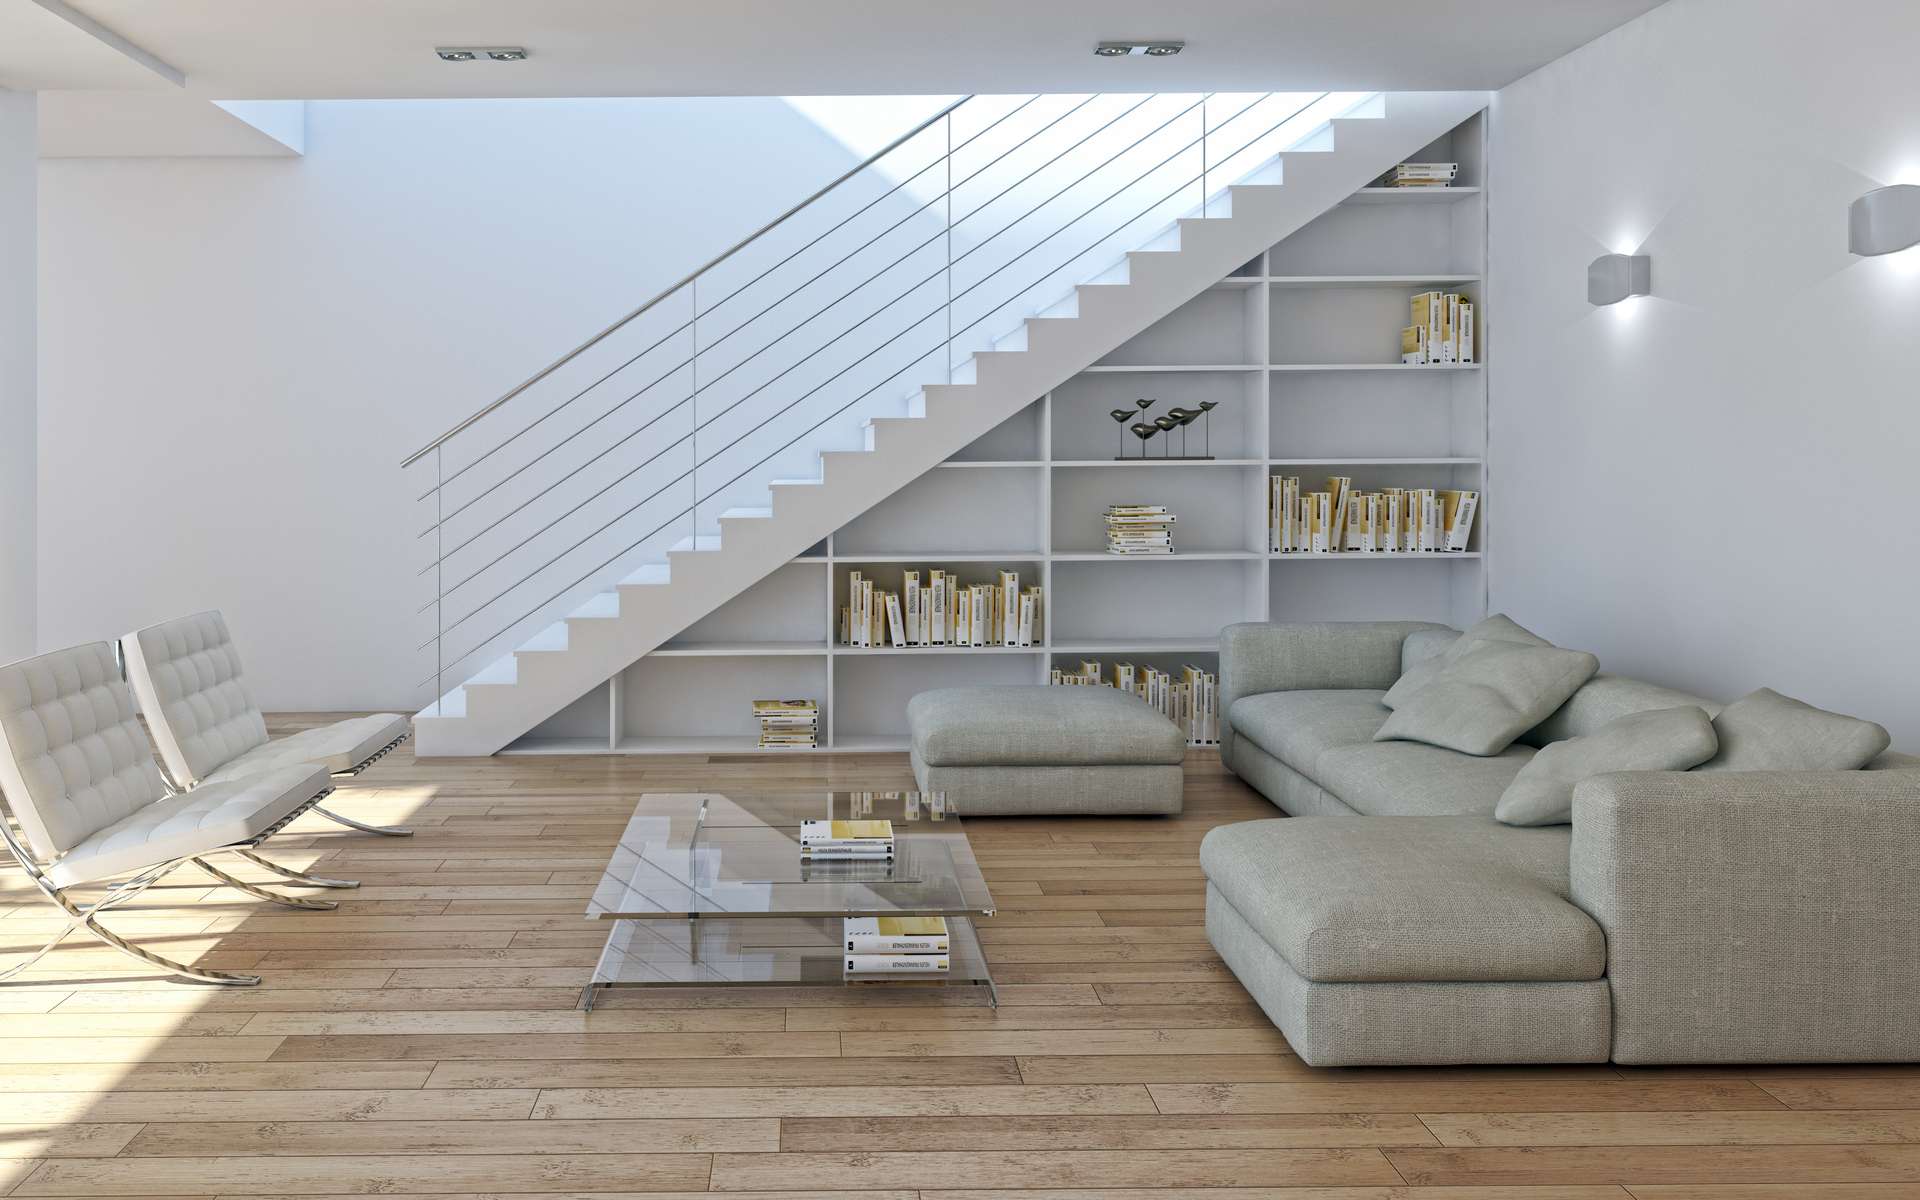 Le dessous d'escalier peut faire partie intégrante d'une pièce © 3DarcaStudio / Adobe Stock